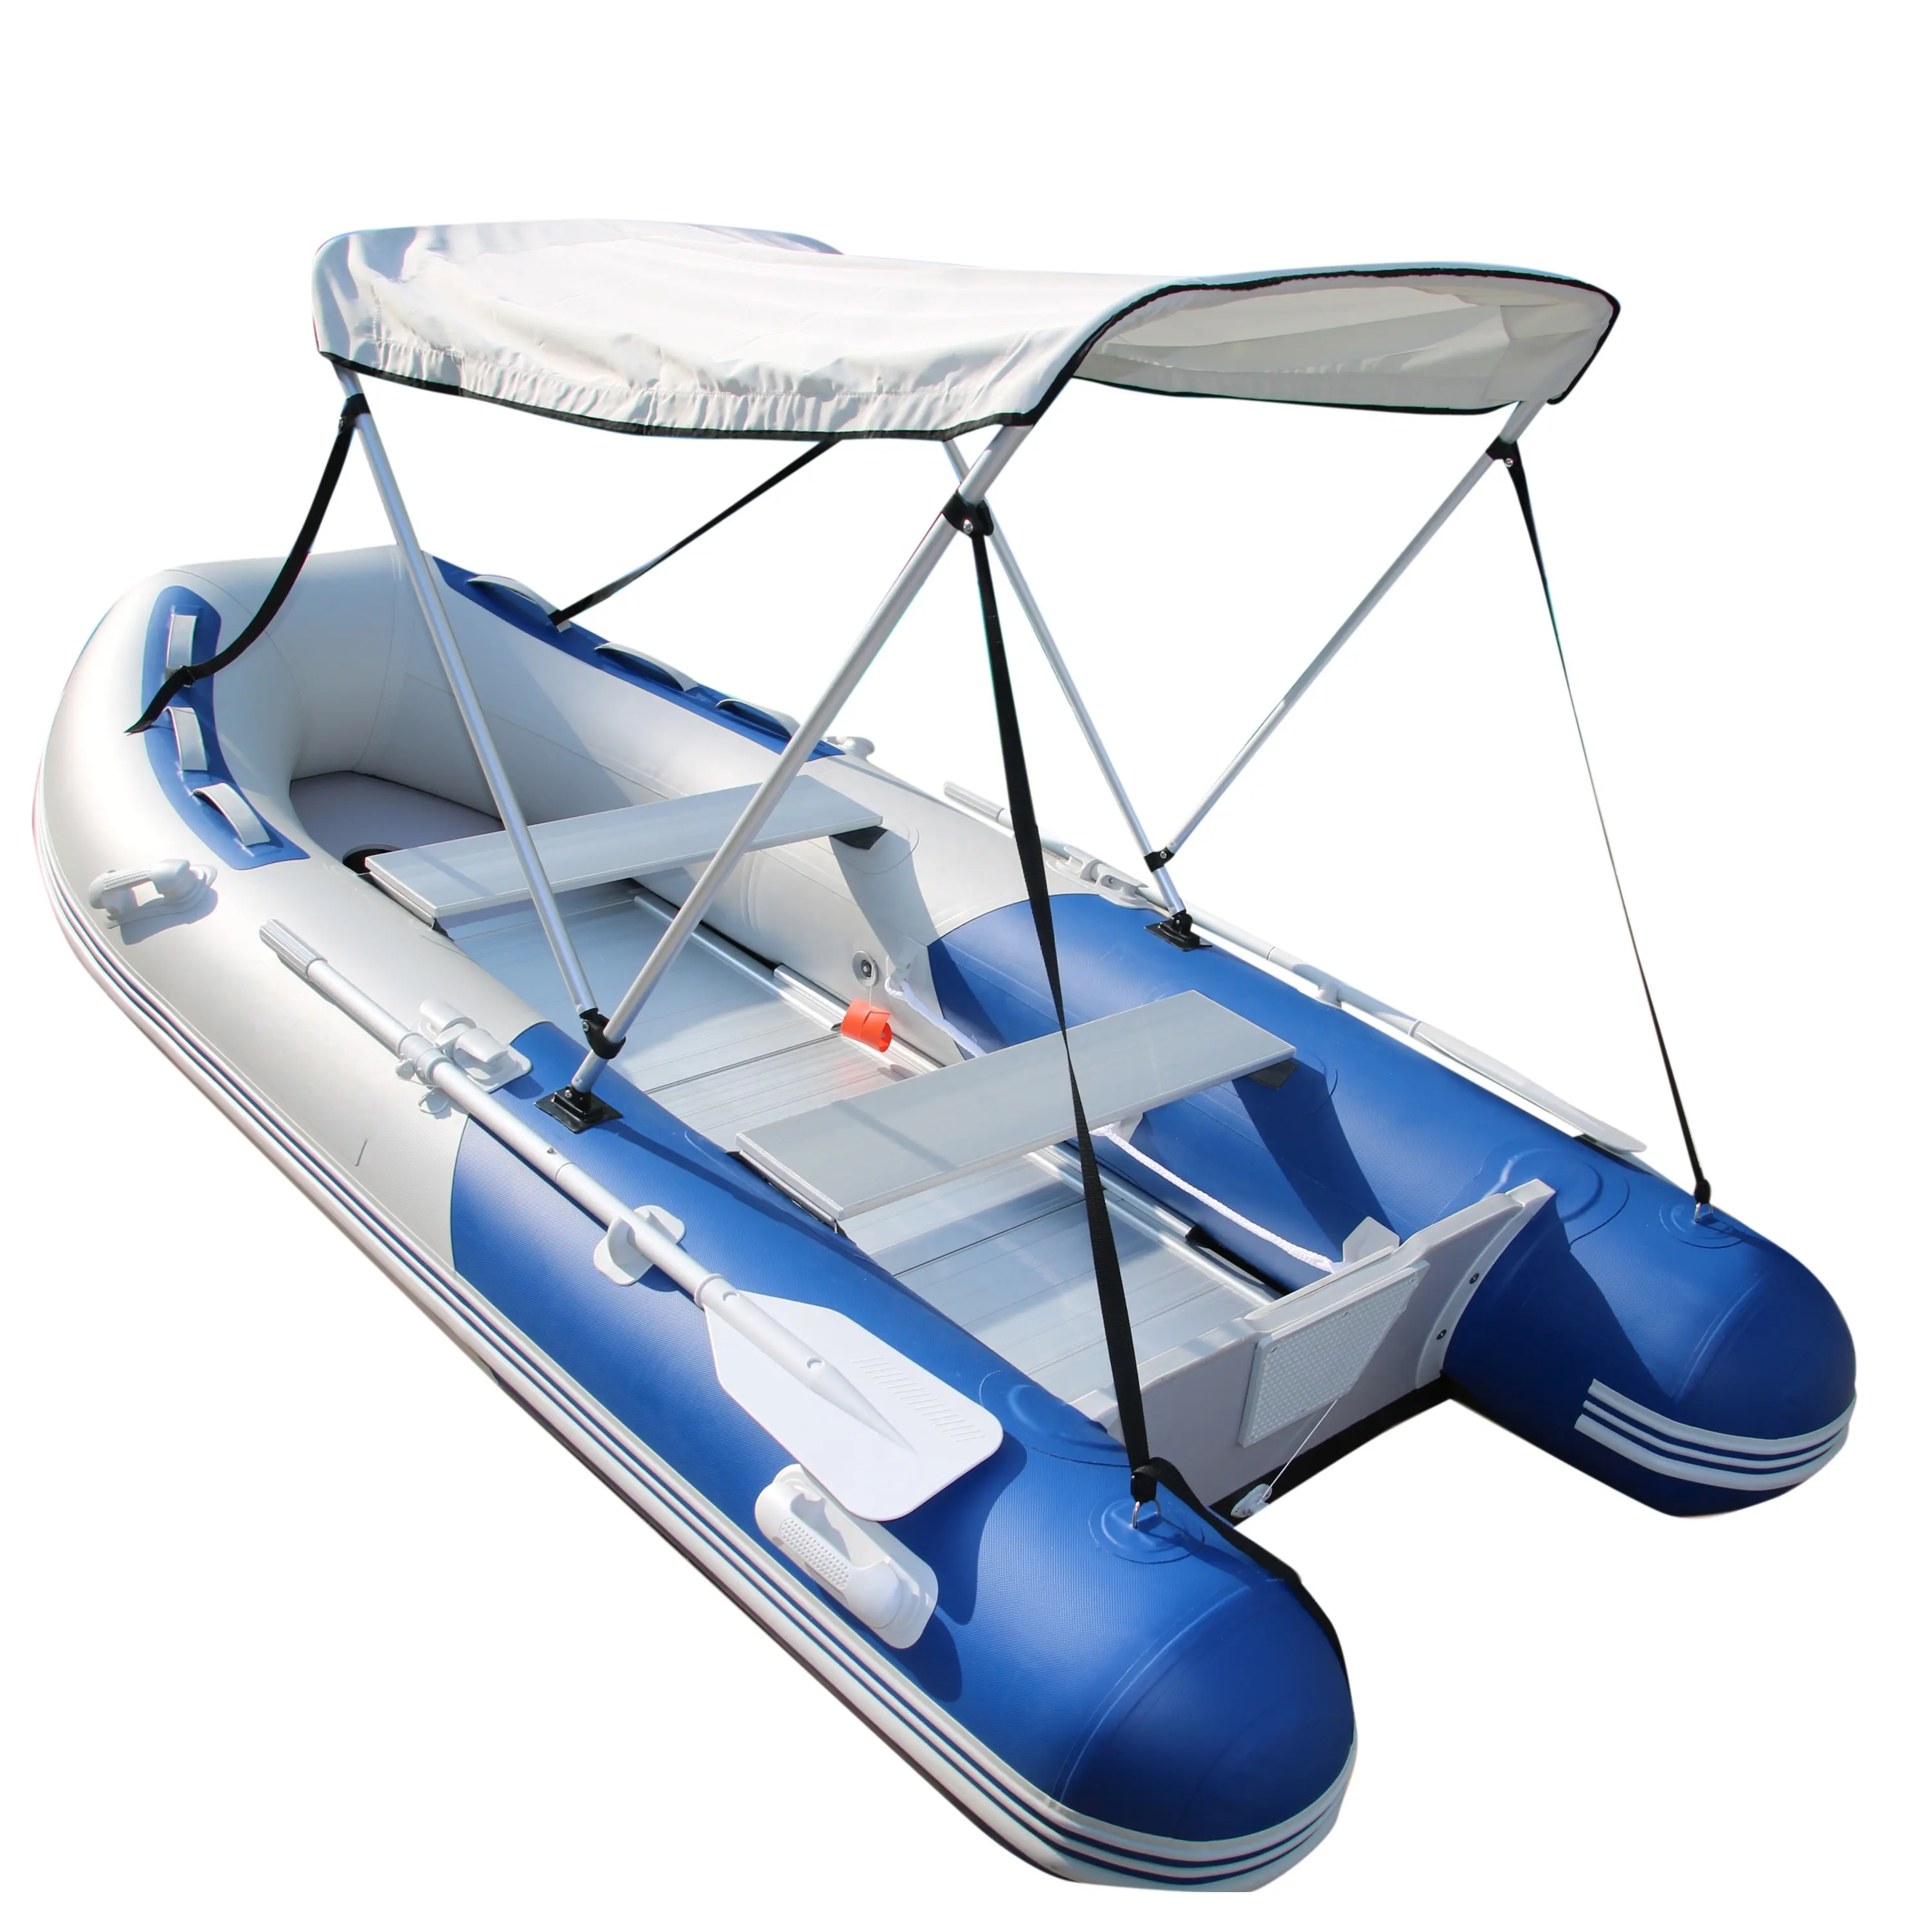 Goethe 10.8ft GTS330 Go boat gommone sport barche con vassoio di ancoraggio corrispondente jet ski e motore fuoribordo